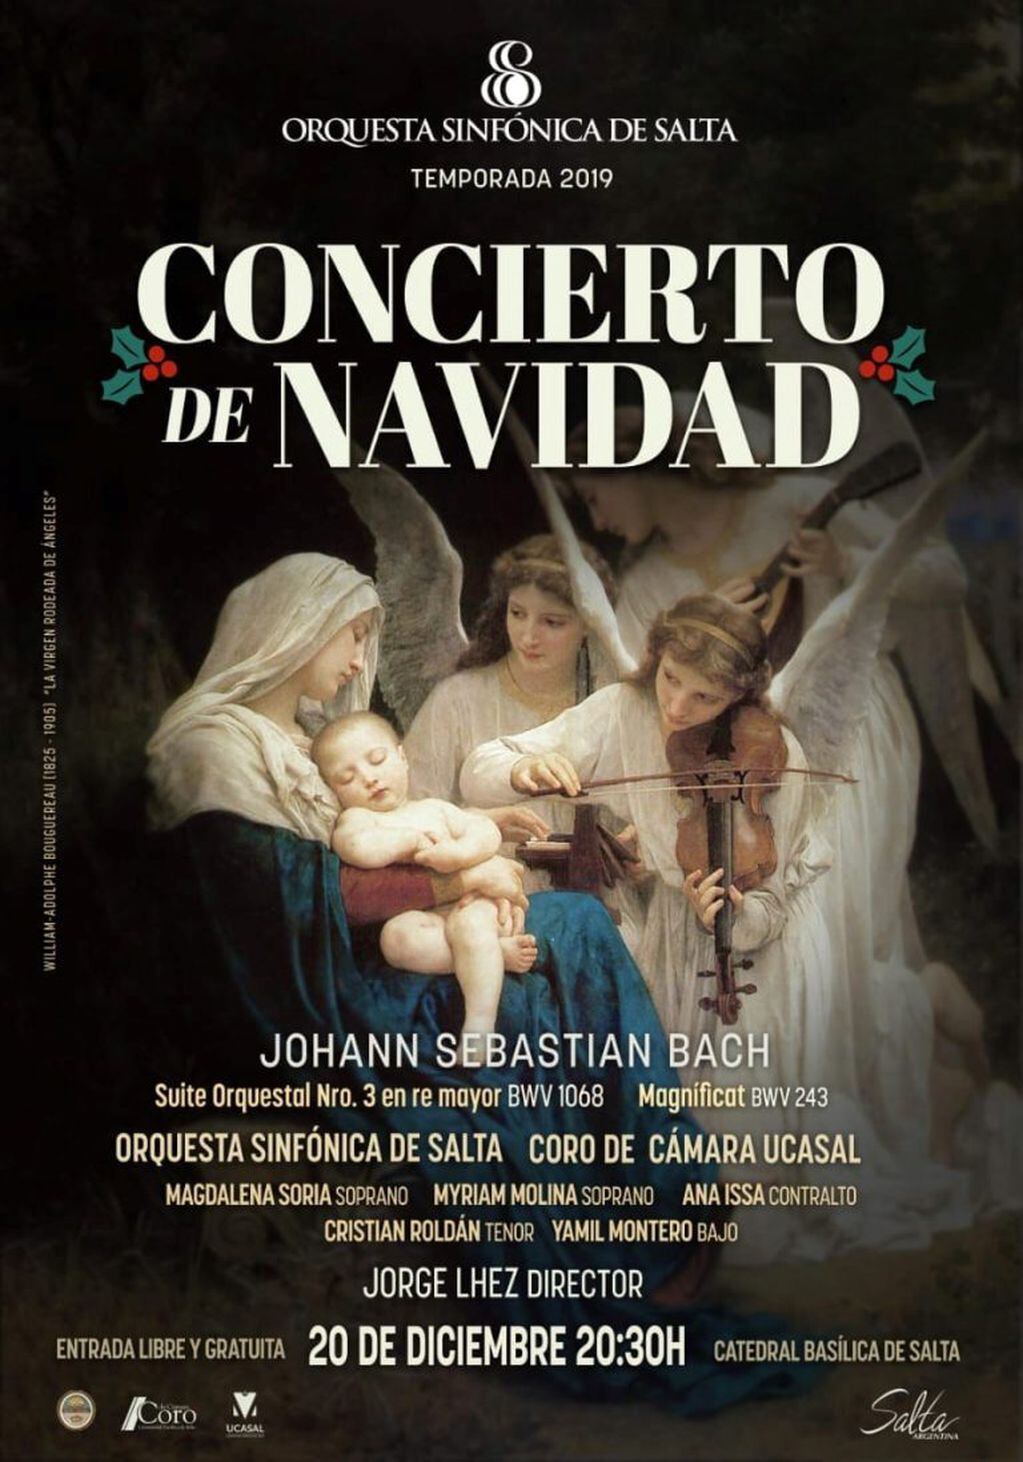 Concierto de Navidad en la Catedral Basílica de Salta (Facebook Orquesta SInfónica de Salta)